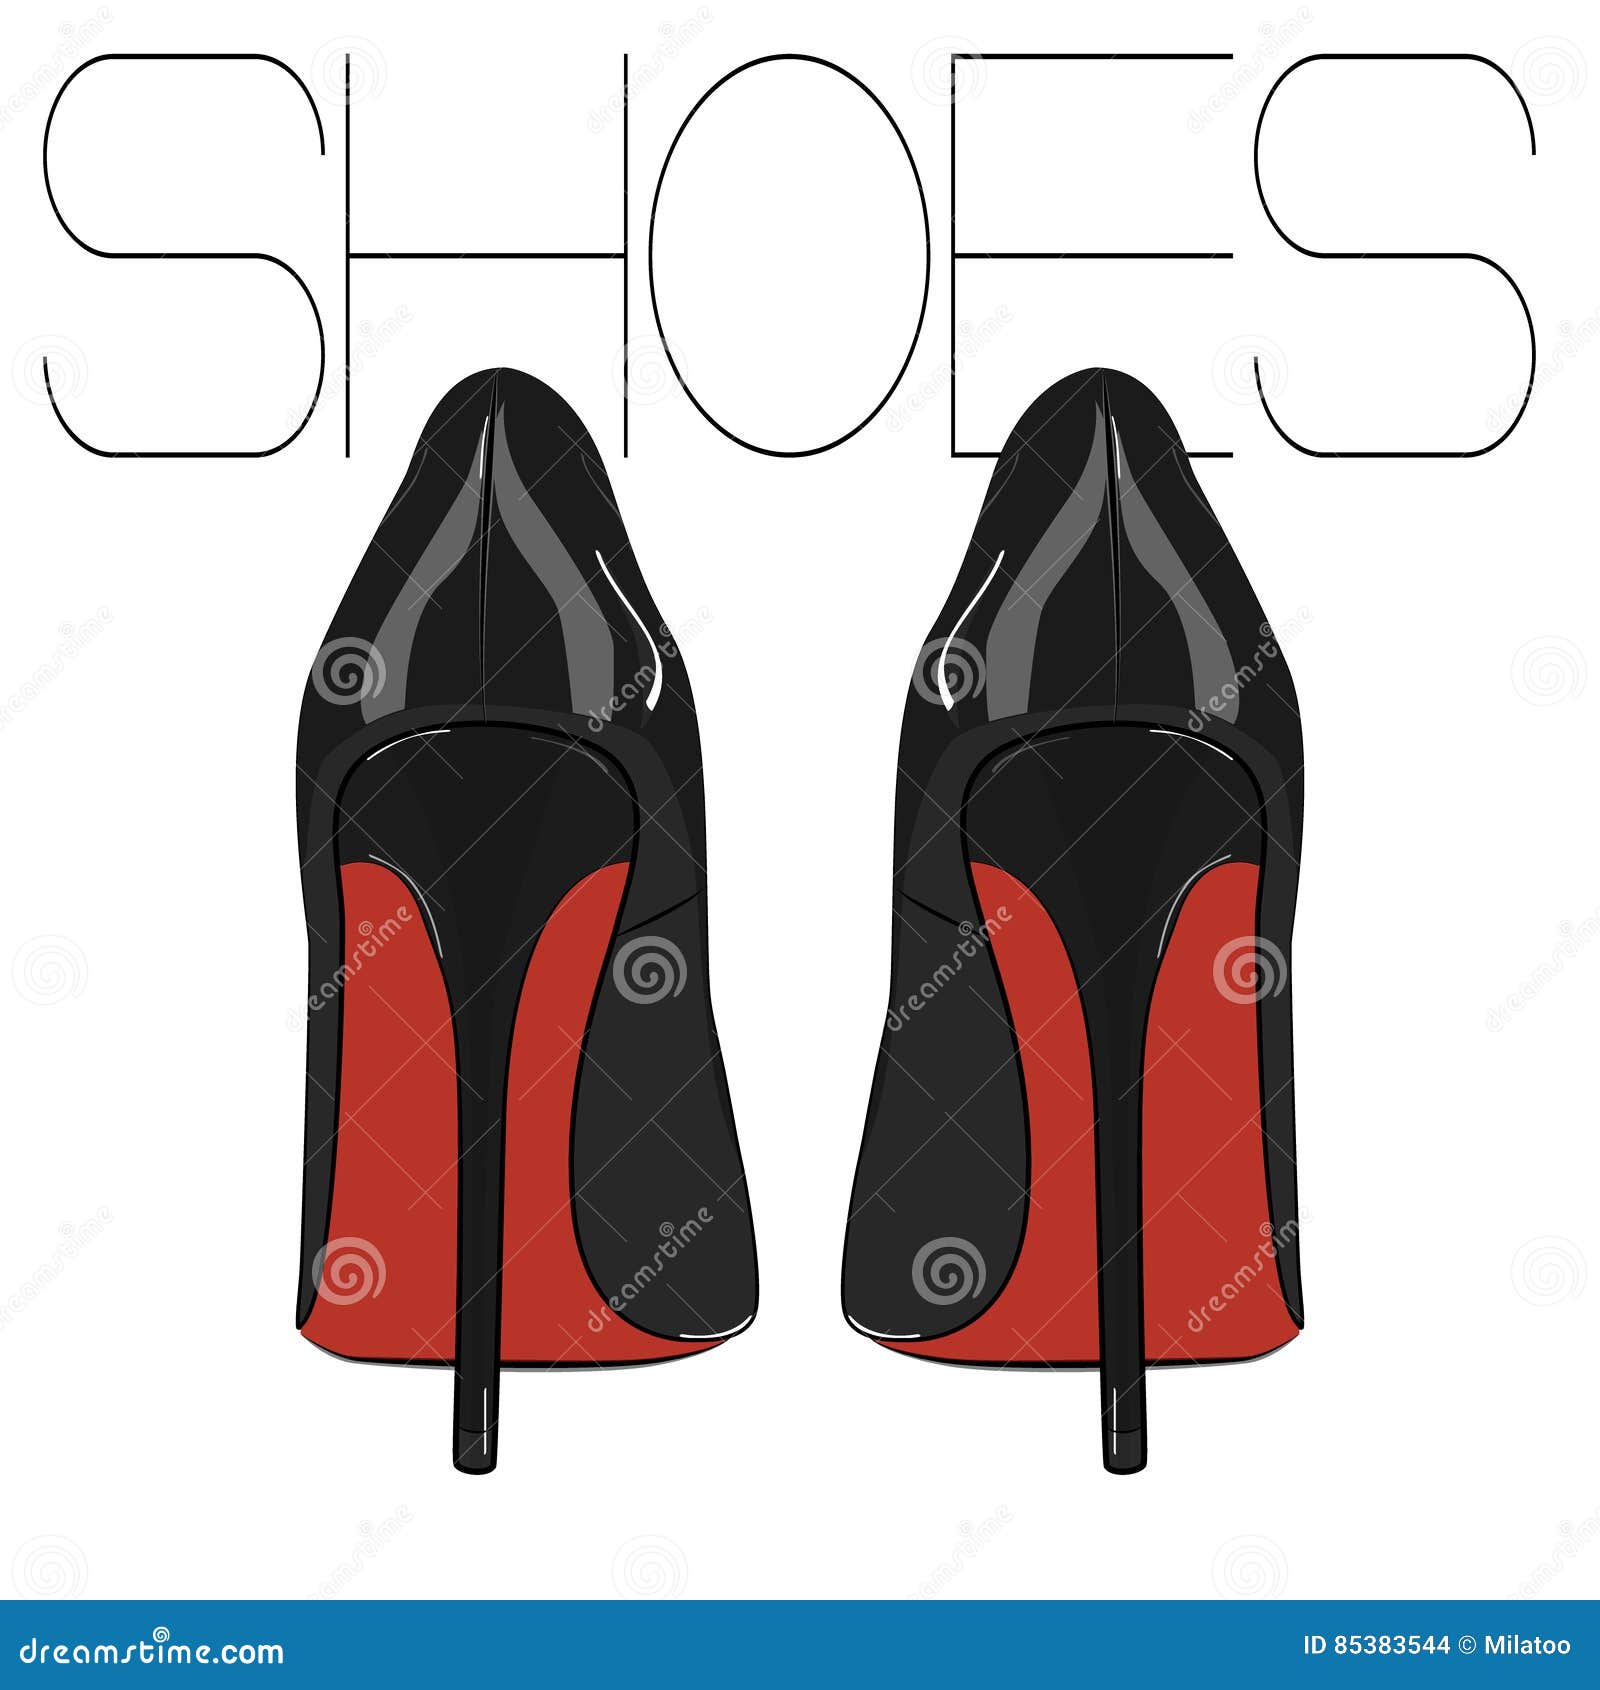 high heels stiletto  shoes. fashion woman . elegance leather luxury footwear. evening fetish red black feti